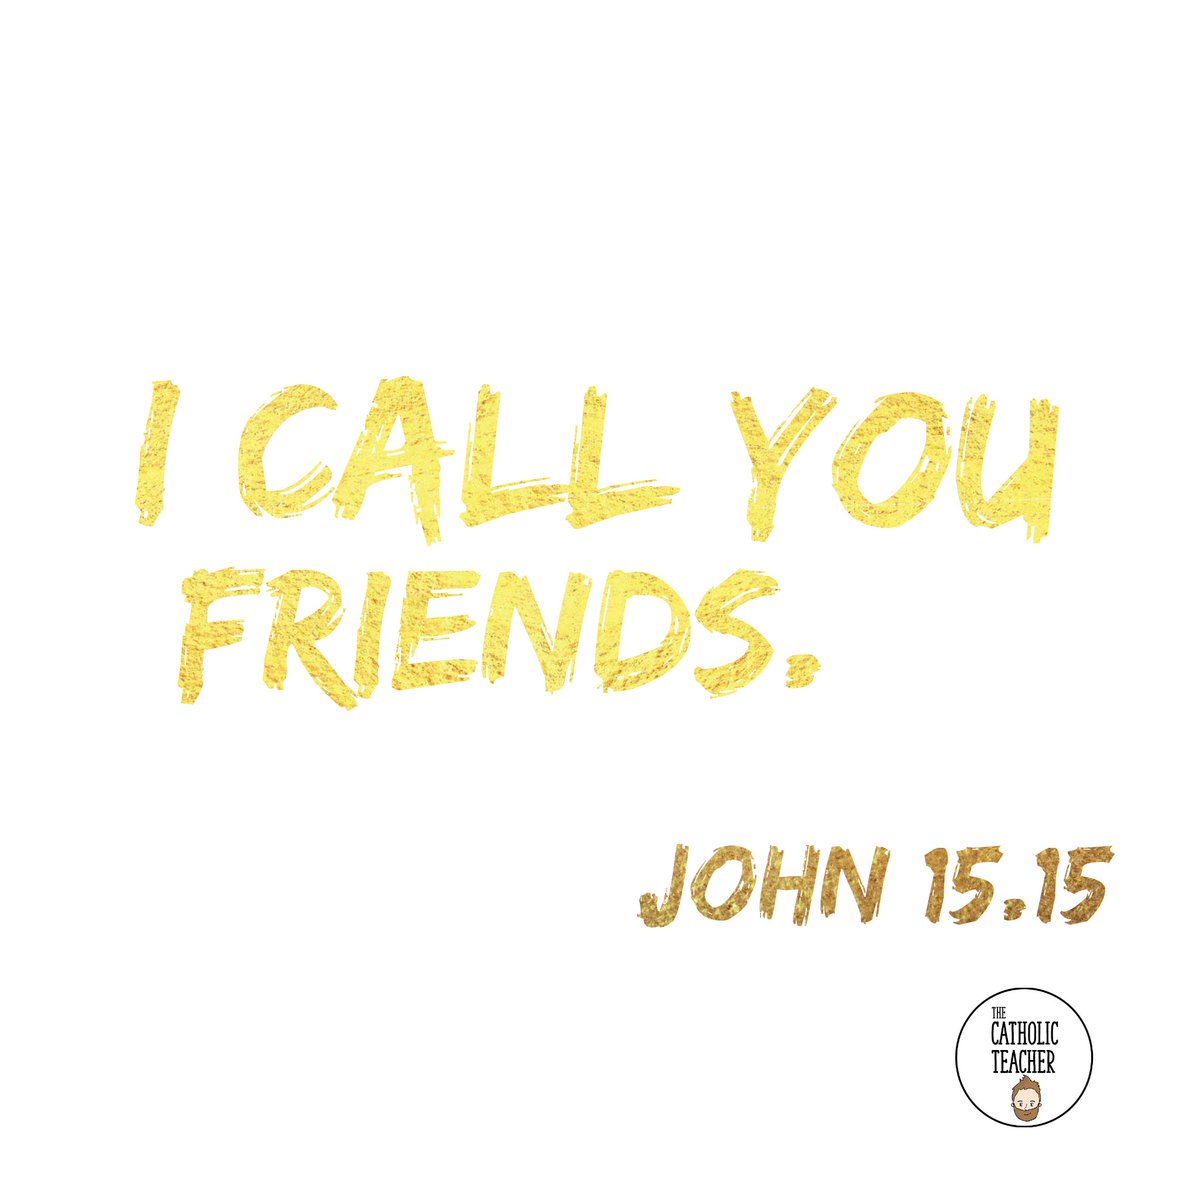 How are you fostering the friendship between Jesus and your students?

#jesus #friends #friendship #god #faith #teacher #teacherlife #Catholic #catholiclife #catholicidentity #thecatholicteacher